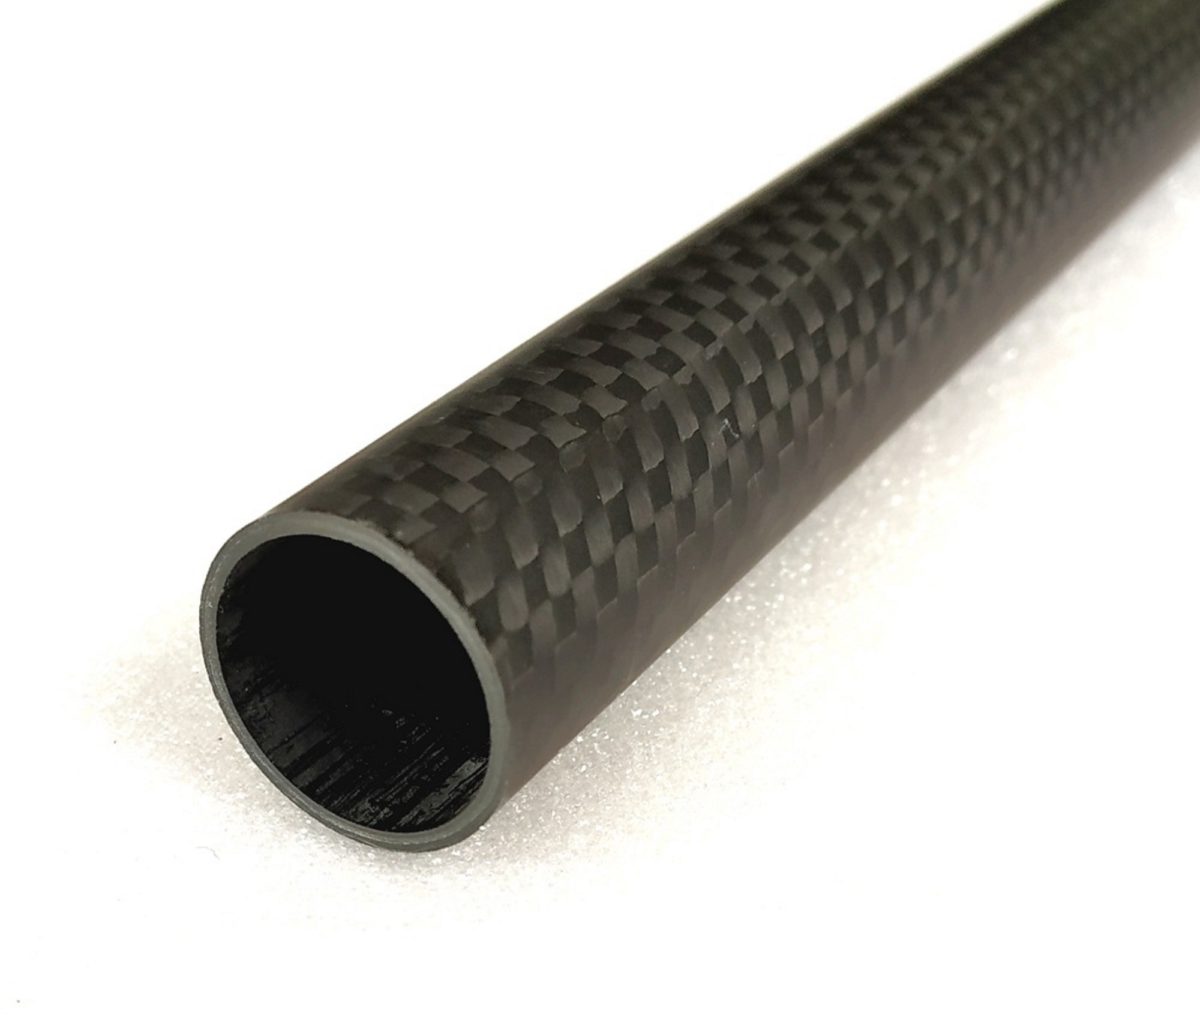 3k Carbon Fiber Tube/Shaft od20 x id19 L500mm Roll Wrapped Poles 20*19 